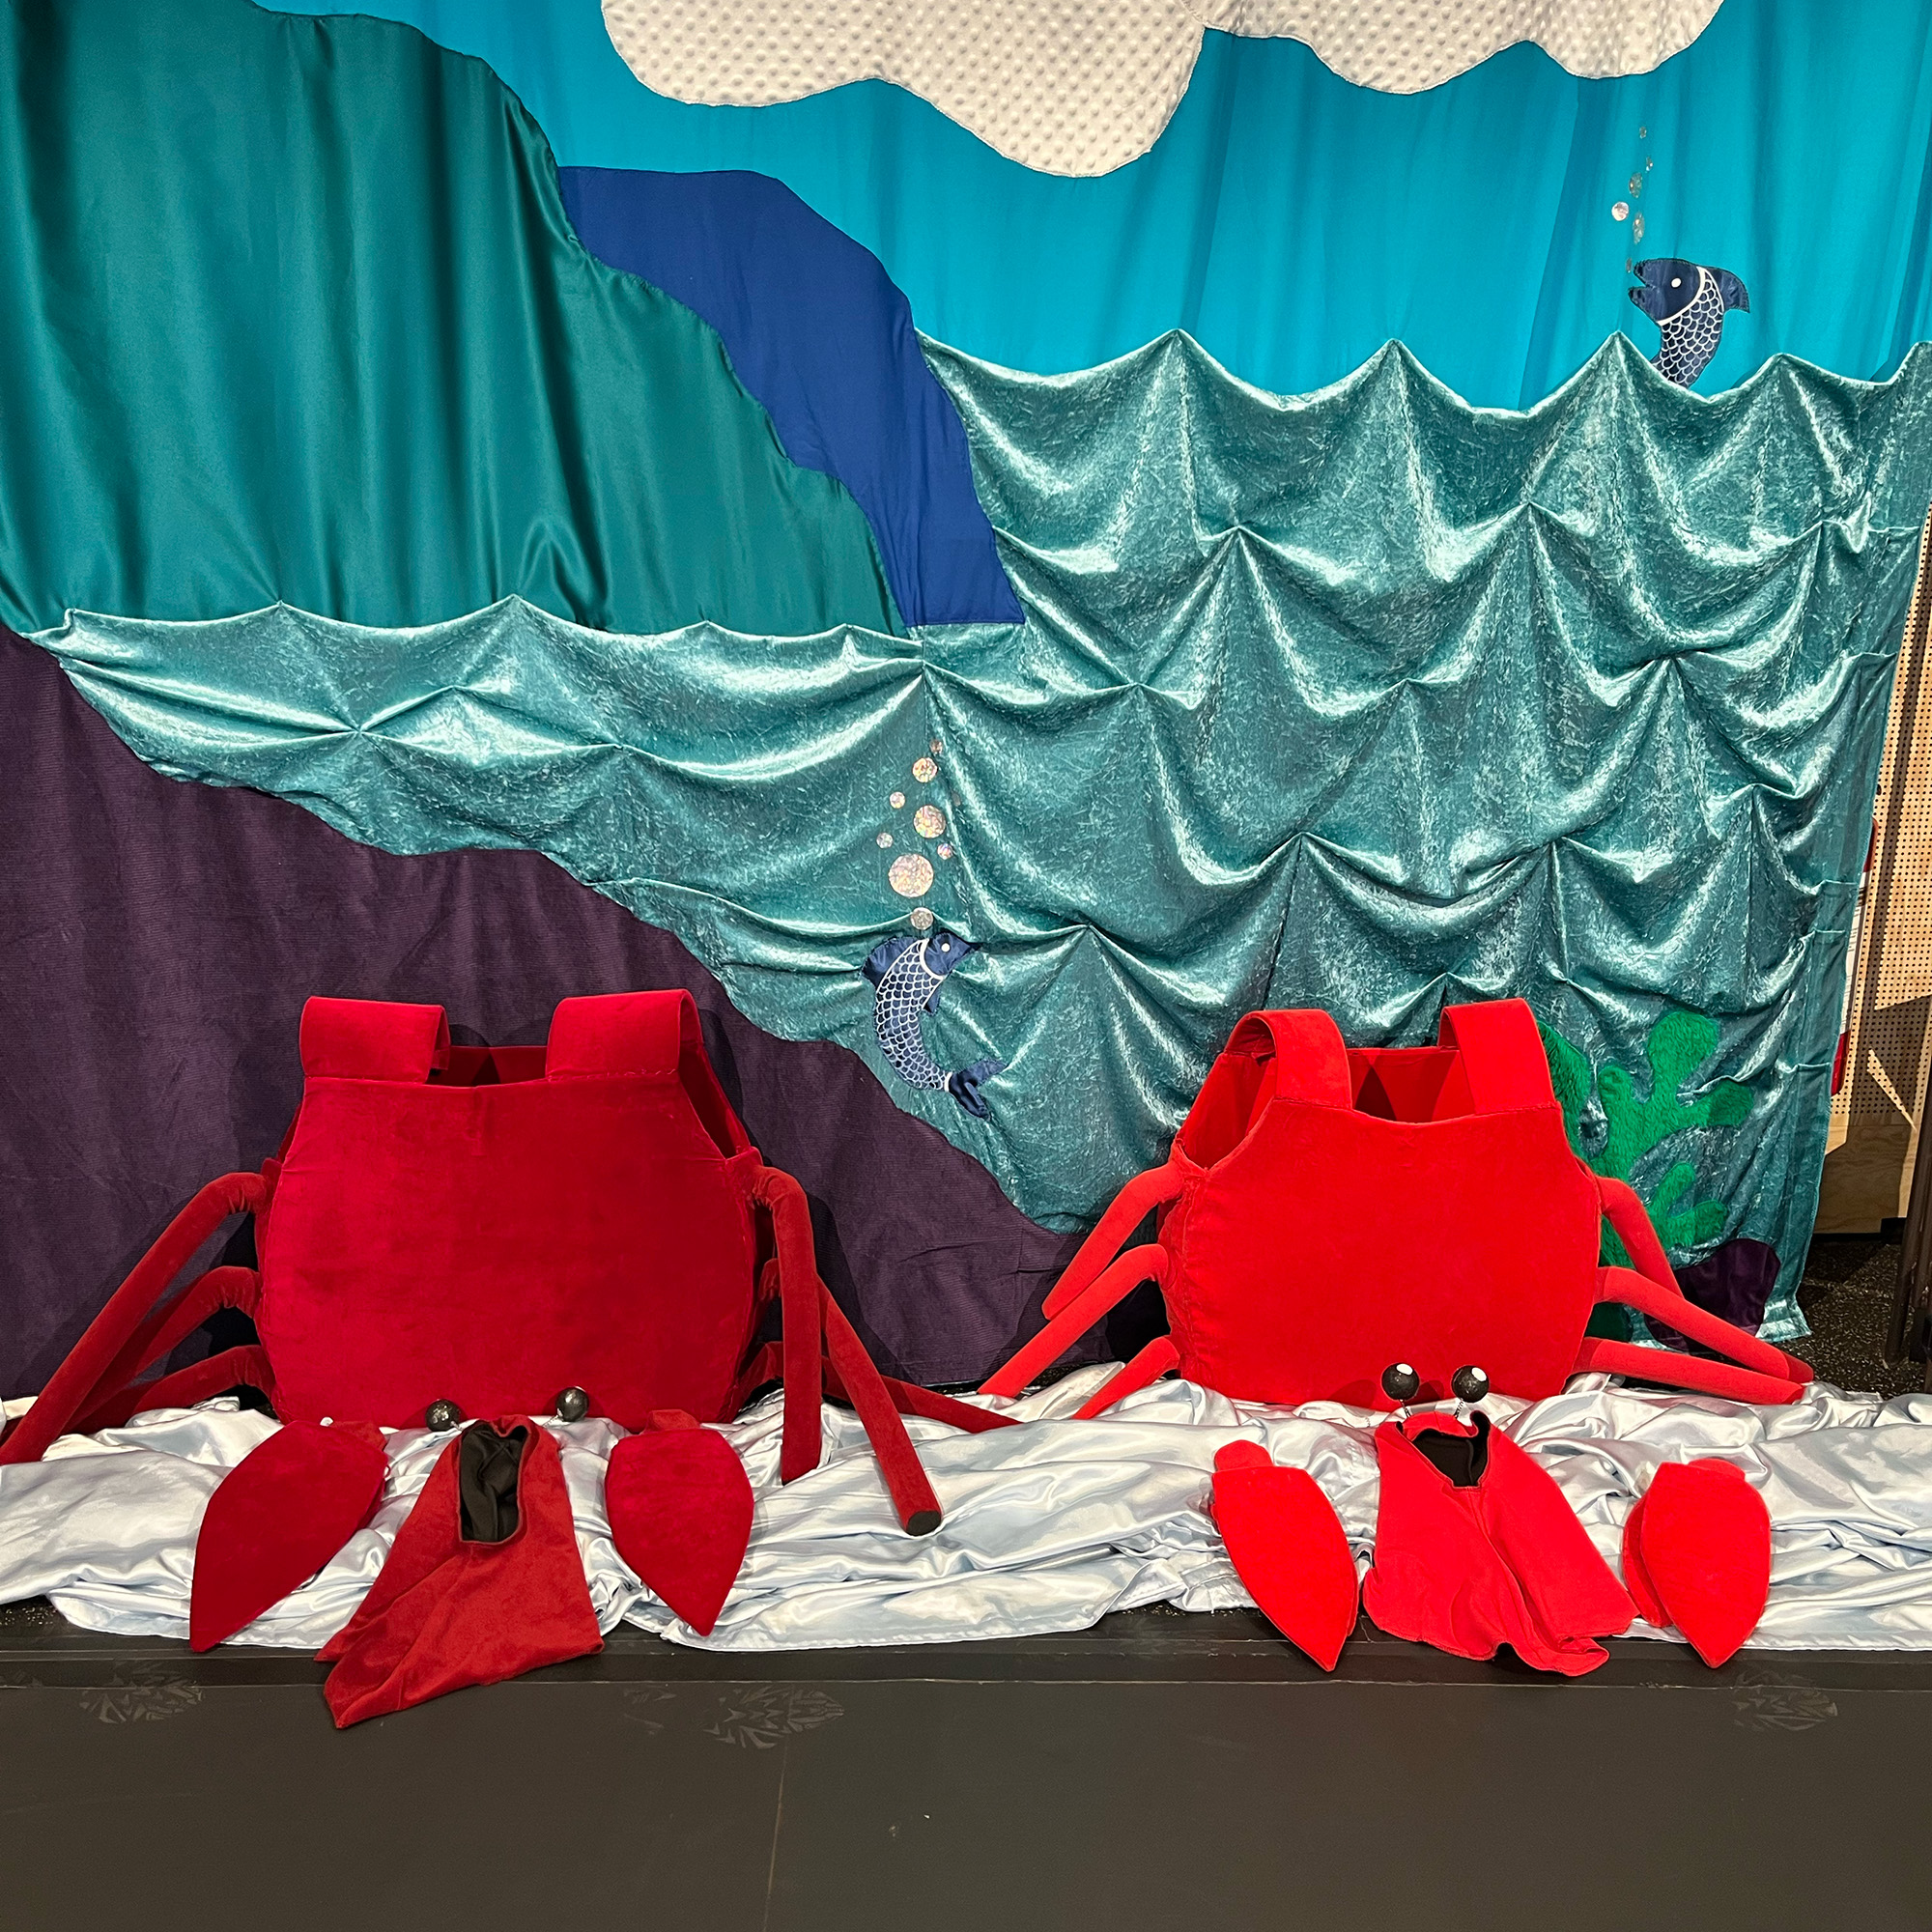 Två kostymer som liknar krabbskal, klor och mössor med spröt står på golvet mot en fond av olika blå nyanser